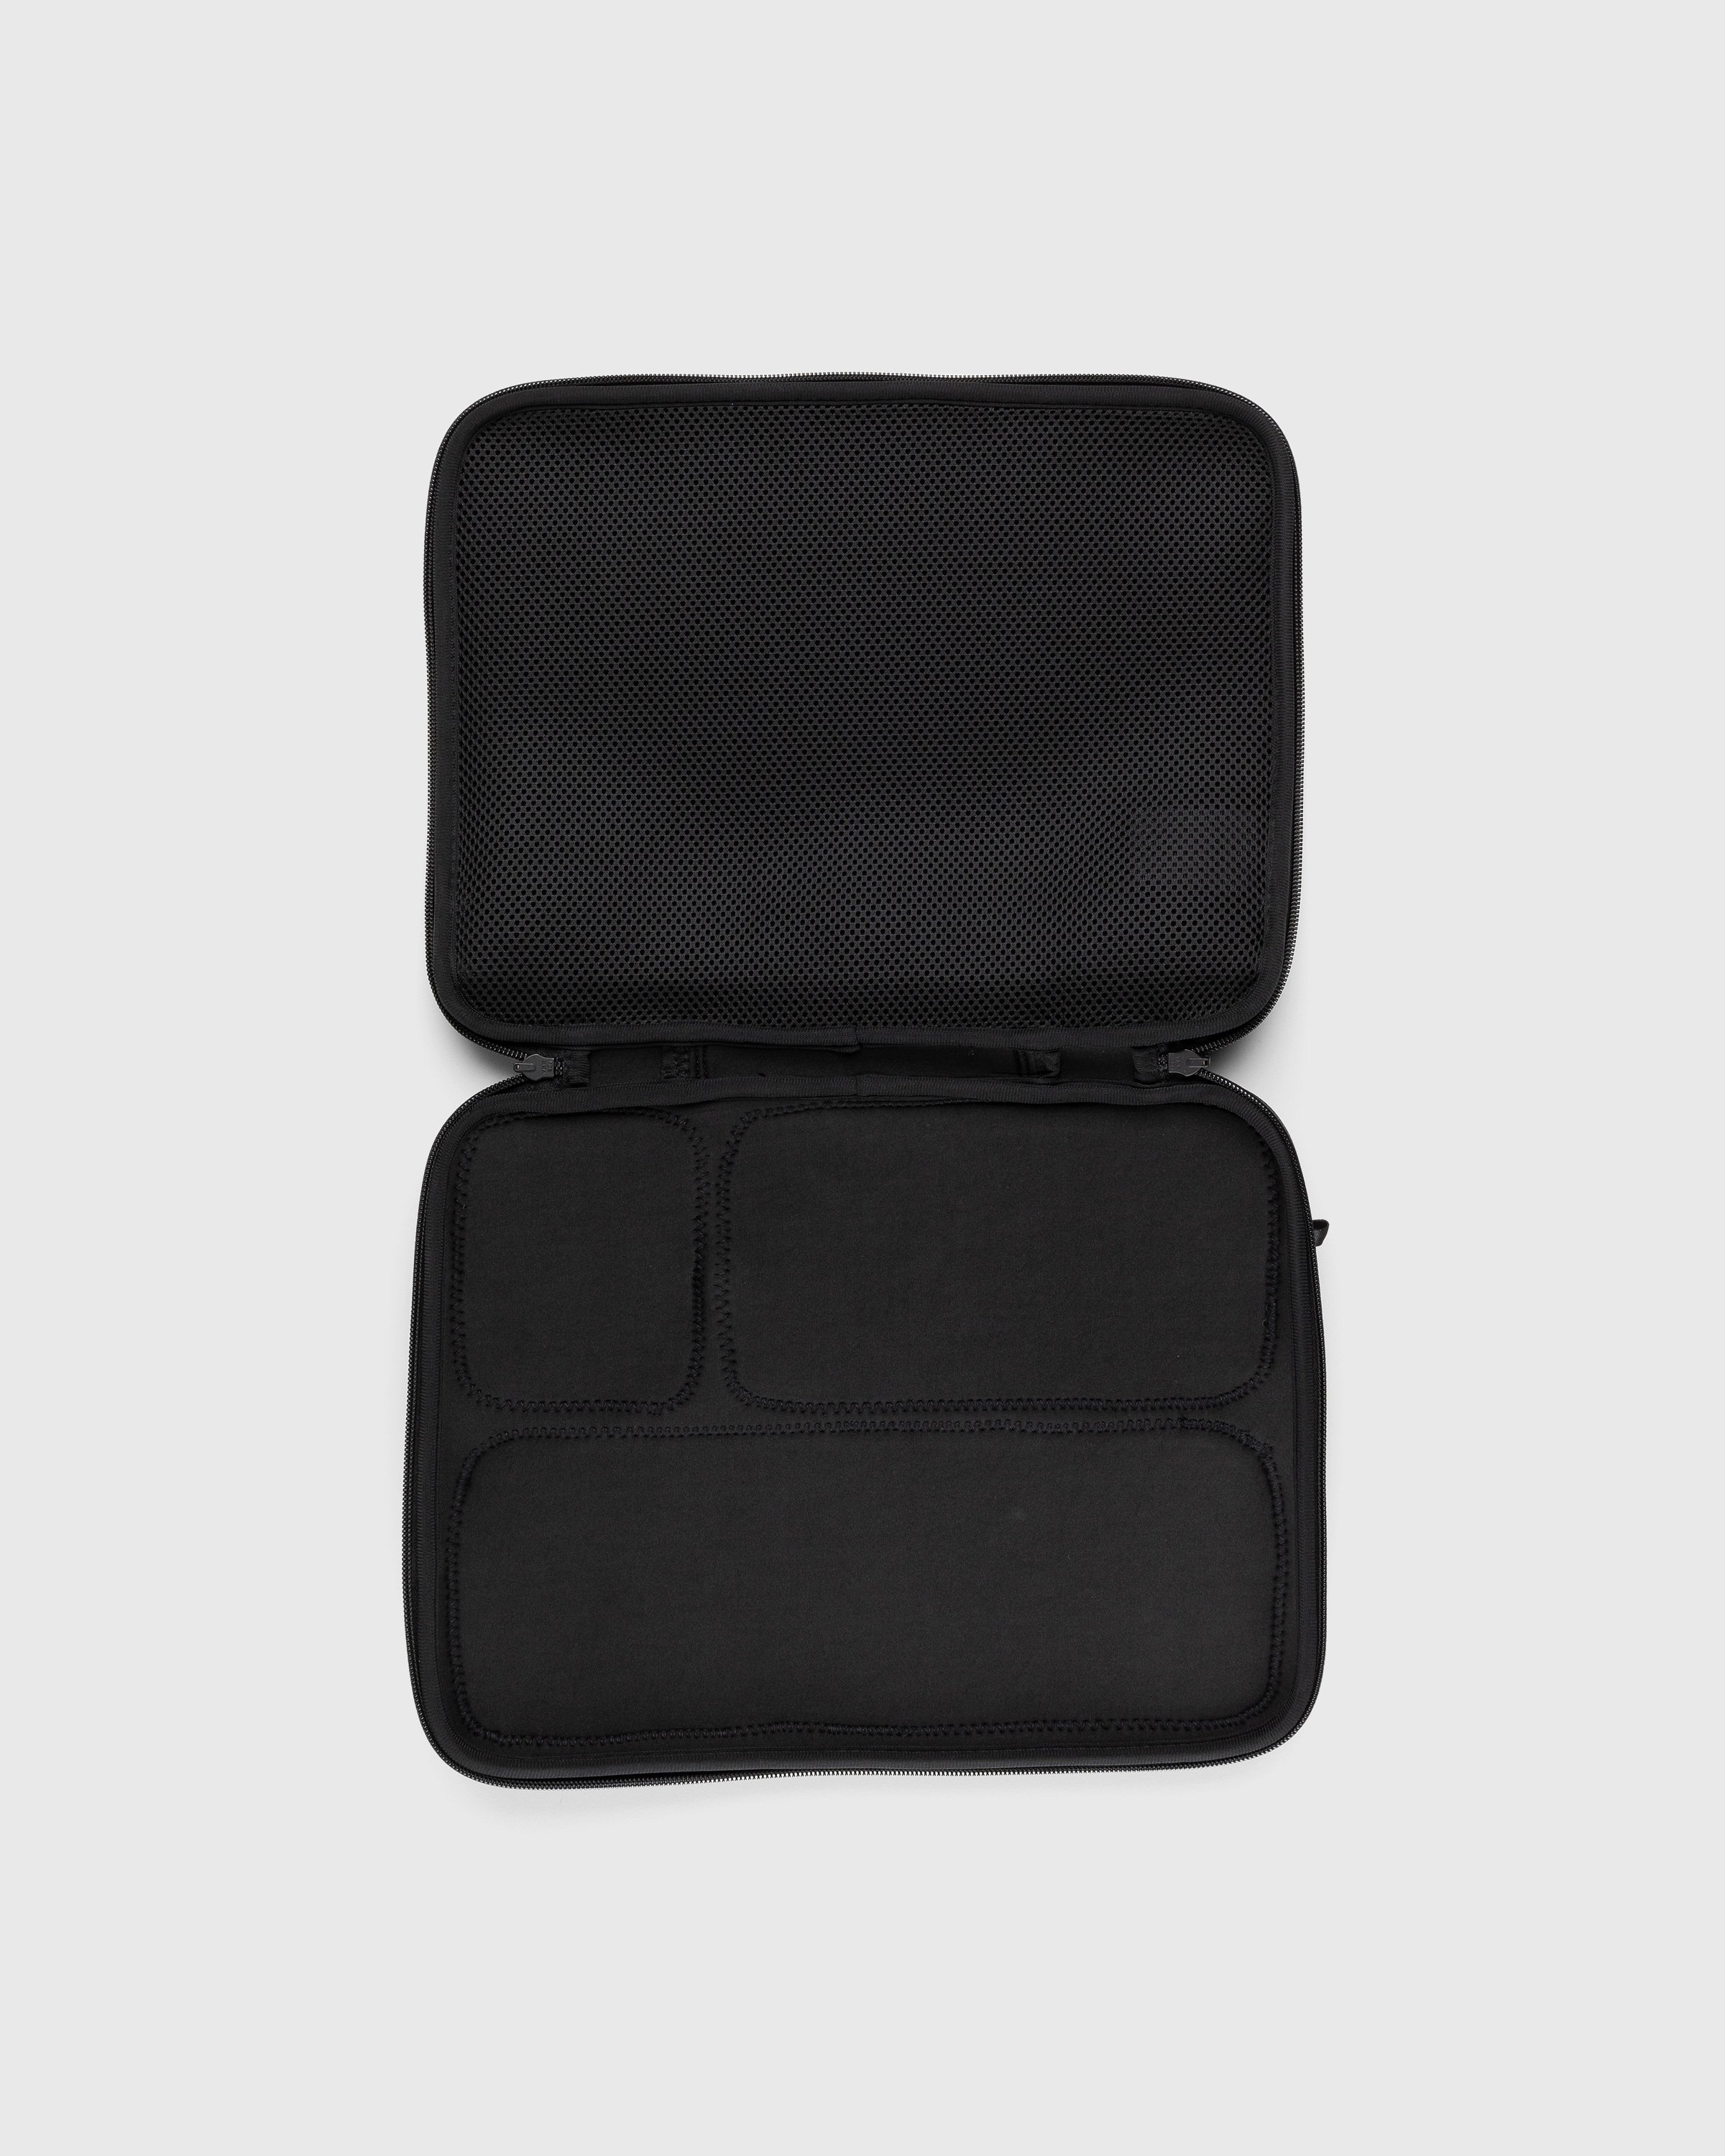 Snow Peak - Multi Storage Laptop Case Black - Accessories - Black - Image 3